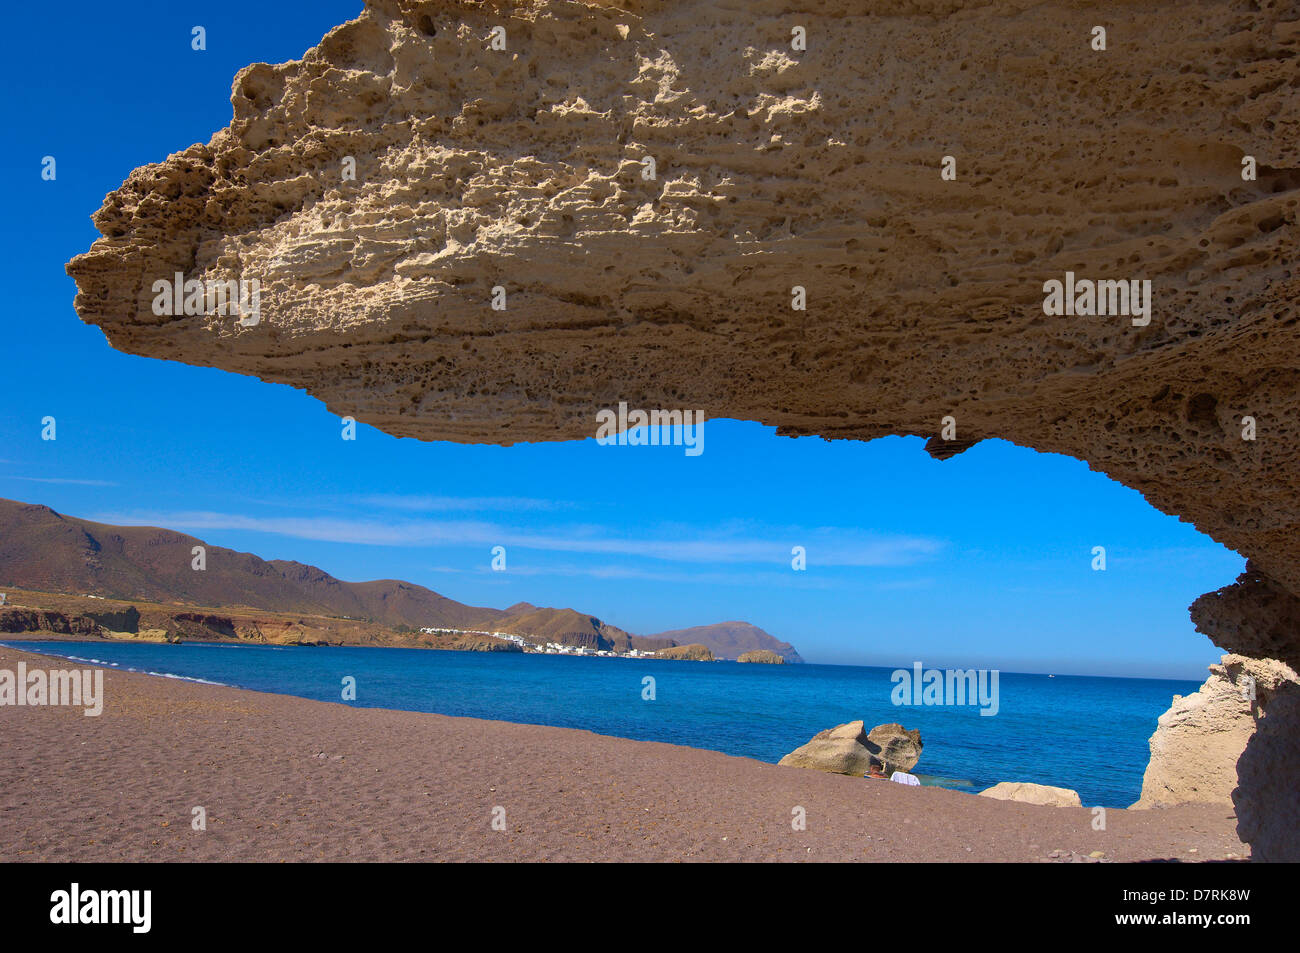 Cabo de Gata, Los escullos, Playa del Arco, El Arco Beach, Cabo de Gata-Nijar Natural Park. Almeria, Andalusia, Spain Stock Photo